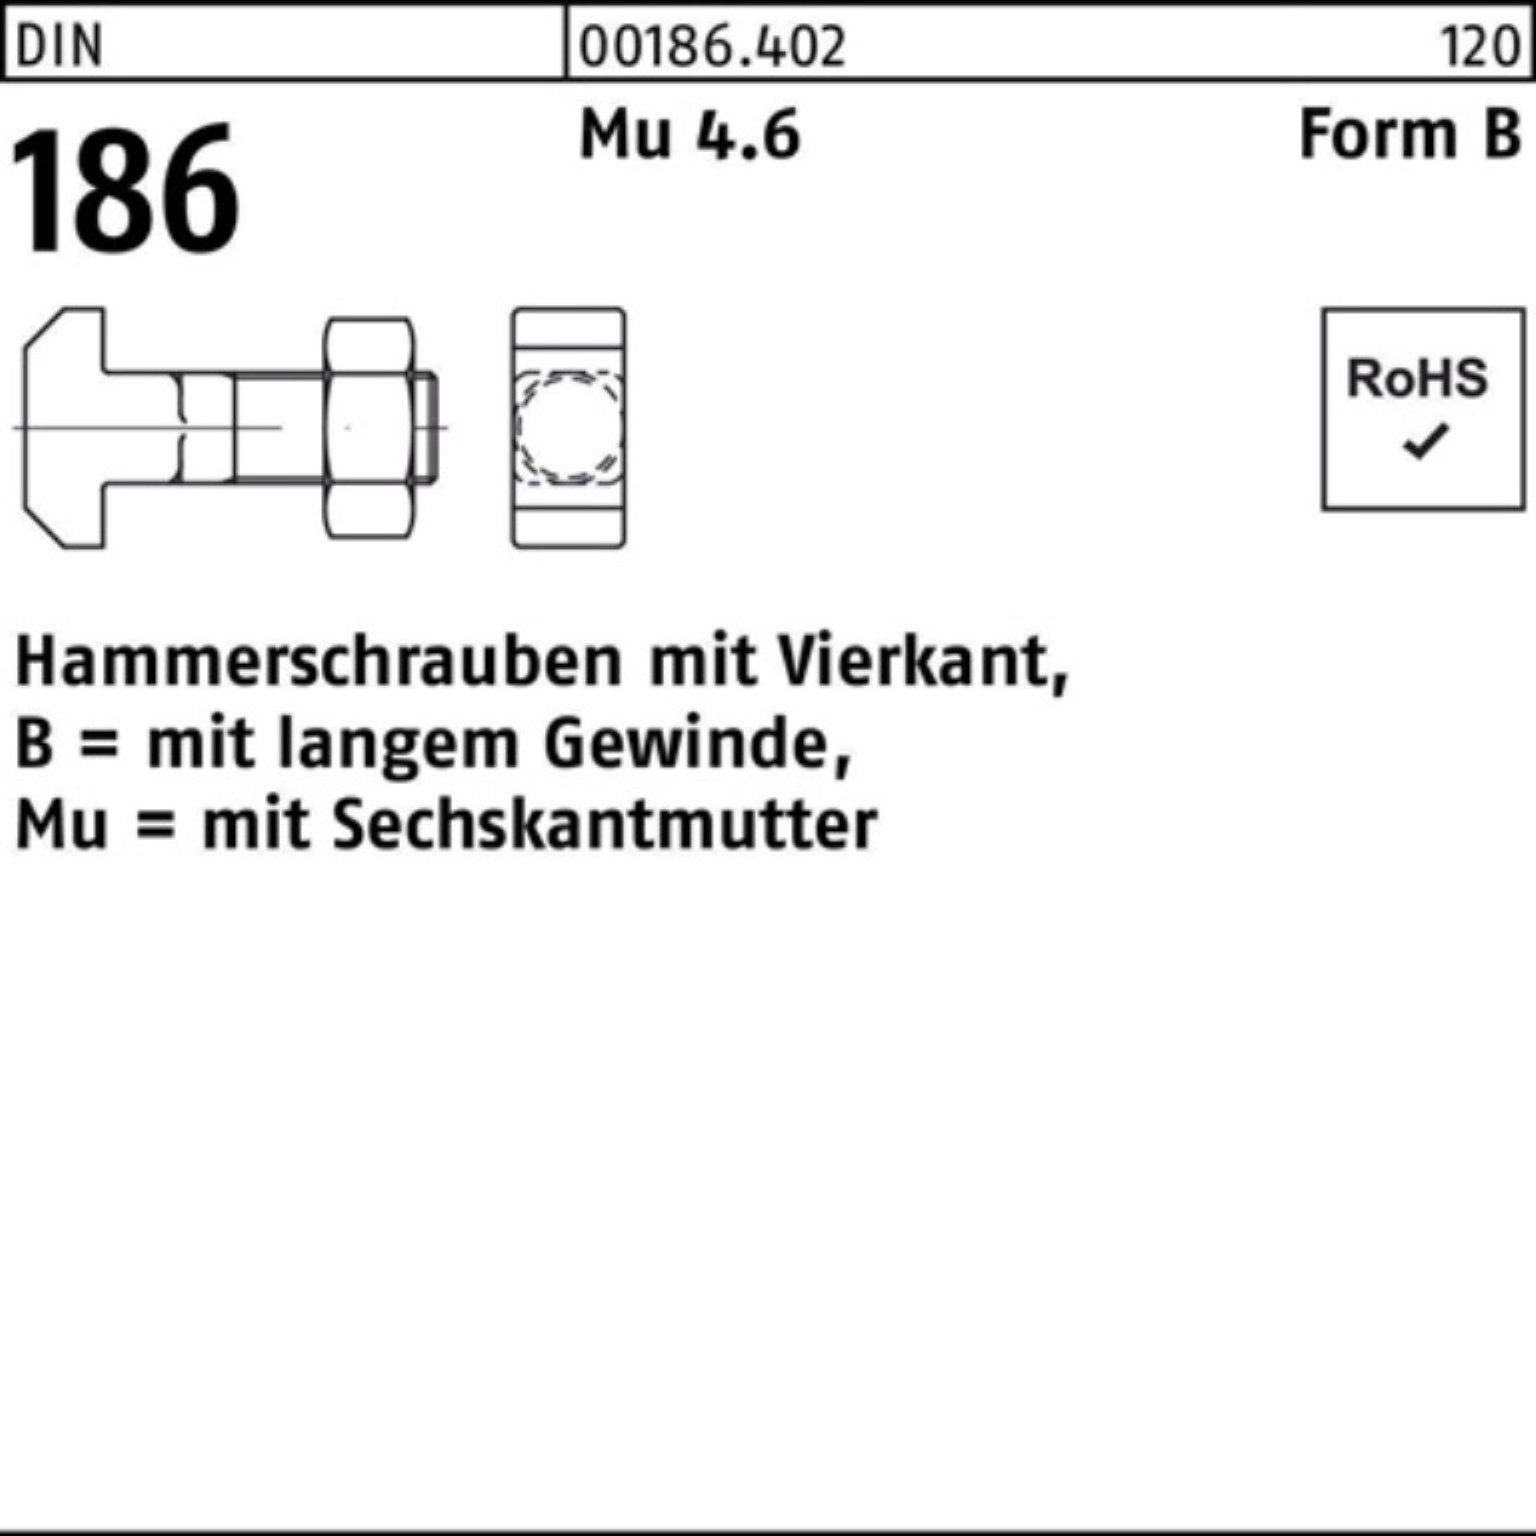 FormB Reyher 6-ktmutter Vierkant 90 BM Pack 10x 186 Schraube 100er DIN Hammerschraube